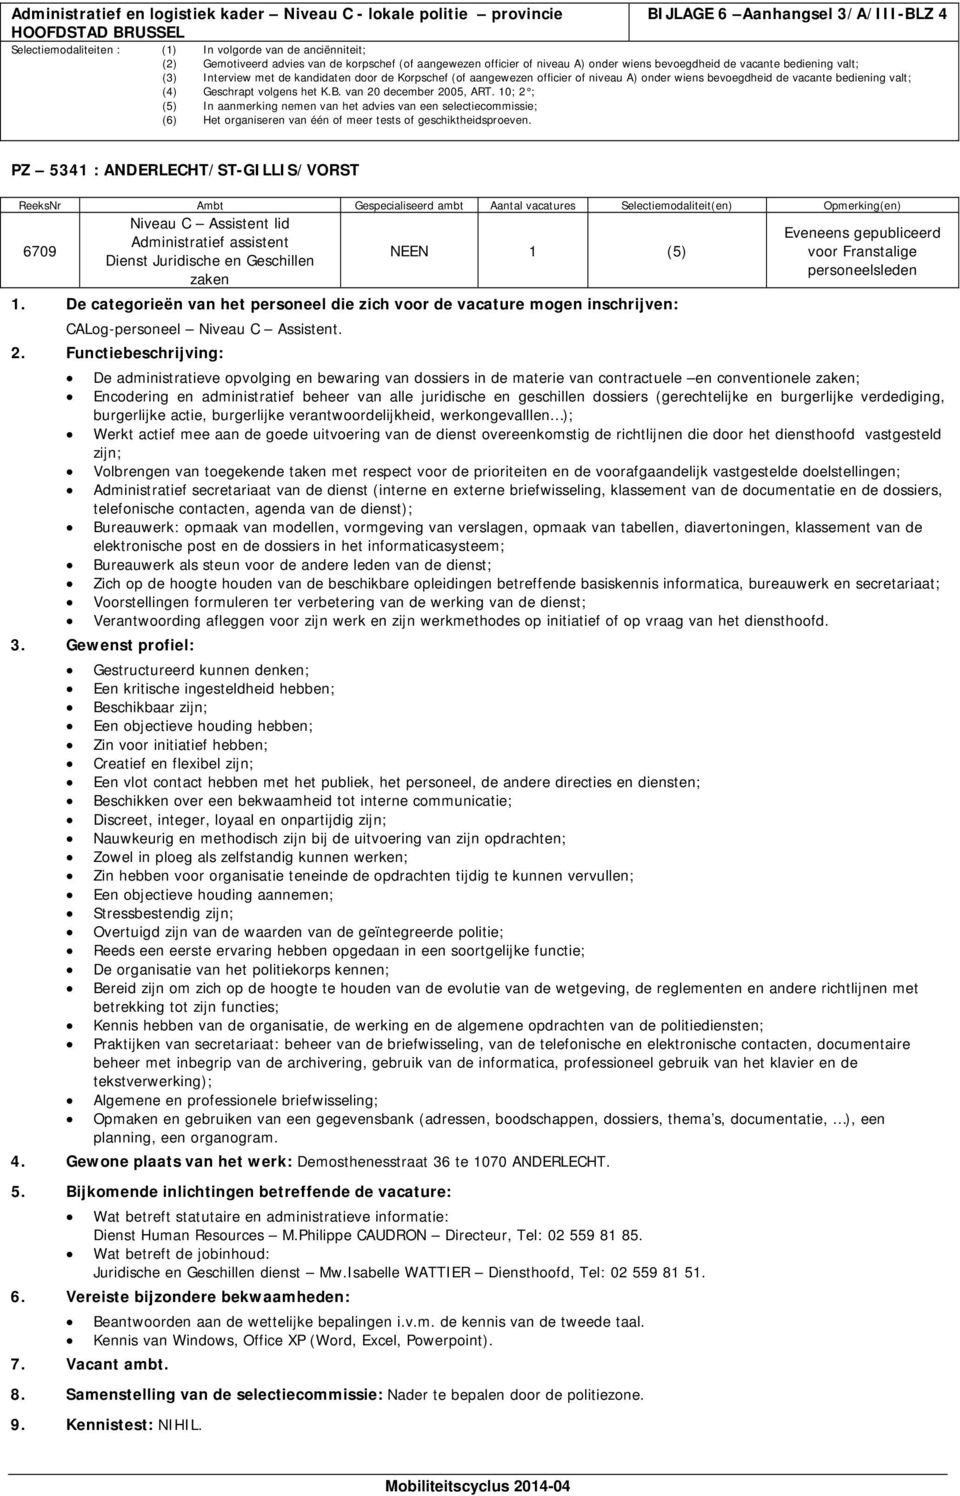 assistent NEEN 1 (5) voor Franstalige Dienst Juridische en Geschillen personeelsleden zaken 1.